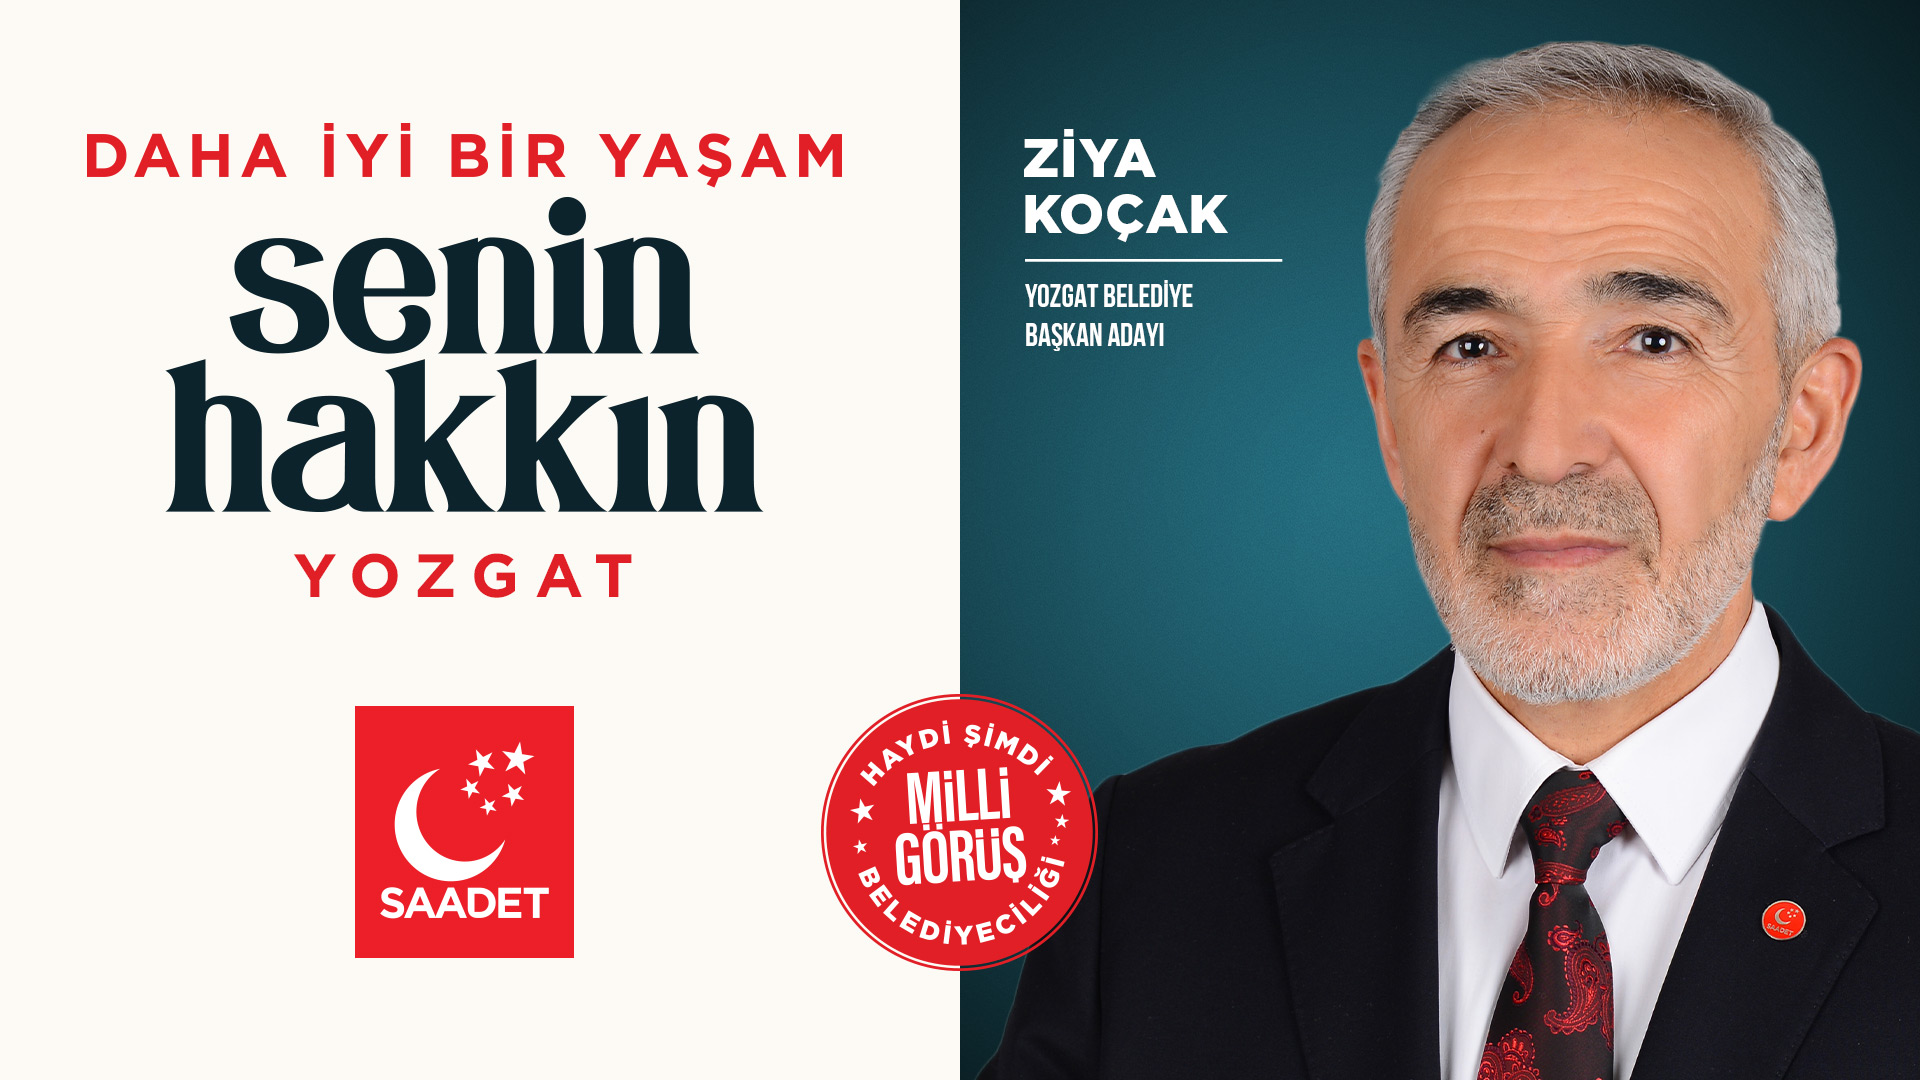 Saadet Partisi, Yozgat Belediye Başkanlığı için Ziya Koçak'ı aday gösterdi